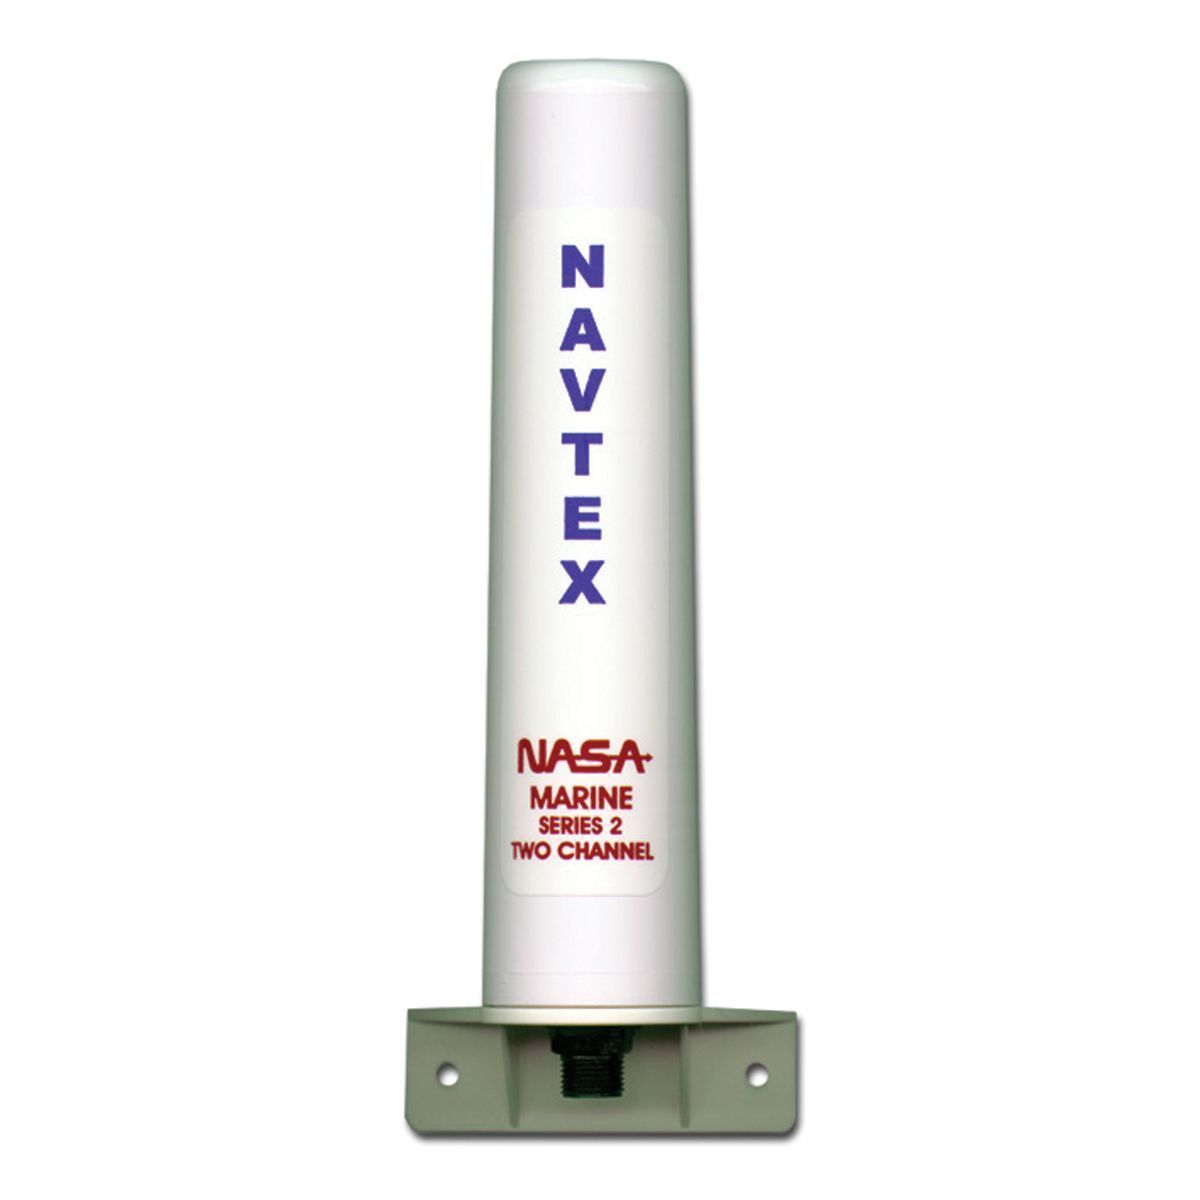 Navtex-Antenne NASA für Serie 2 -  - Ihr wassersport-handel